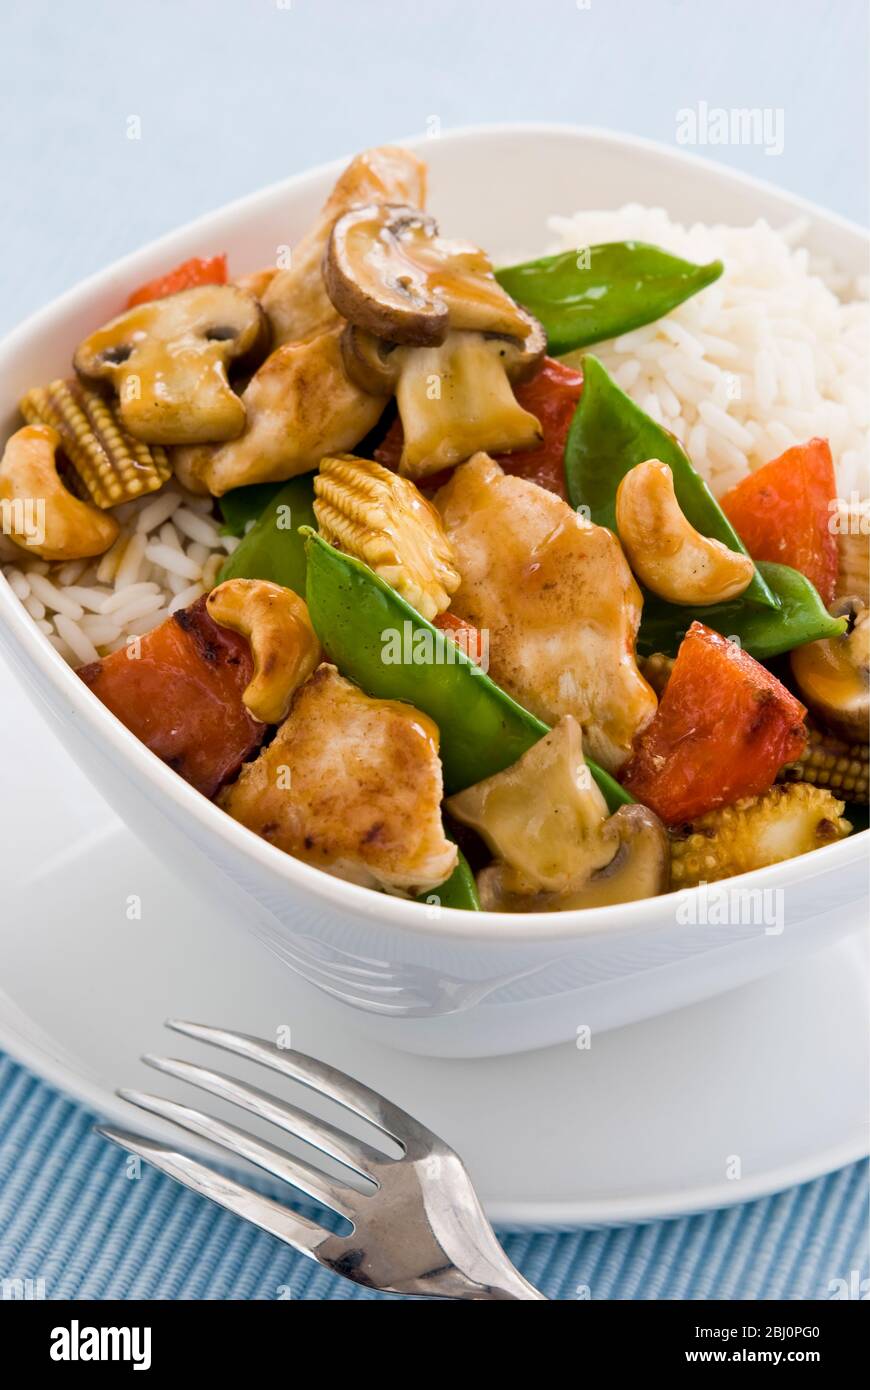 Leichtes, gesundes Gericht mit gebratenen Hähnchenstücken mit Gemüse und Cashewnüssen in chinesischer Sauce auf Reis, serviert in einer einfachen weißen Schüssel. Sh Stockfoto